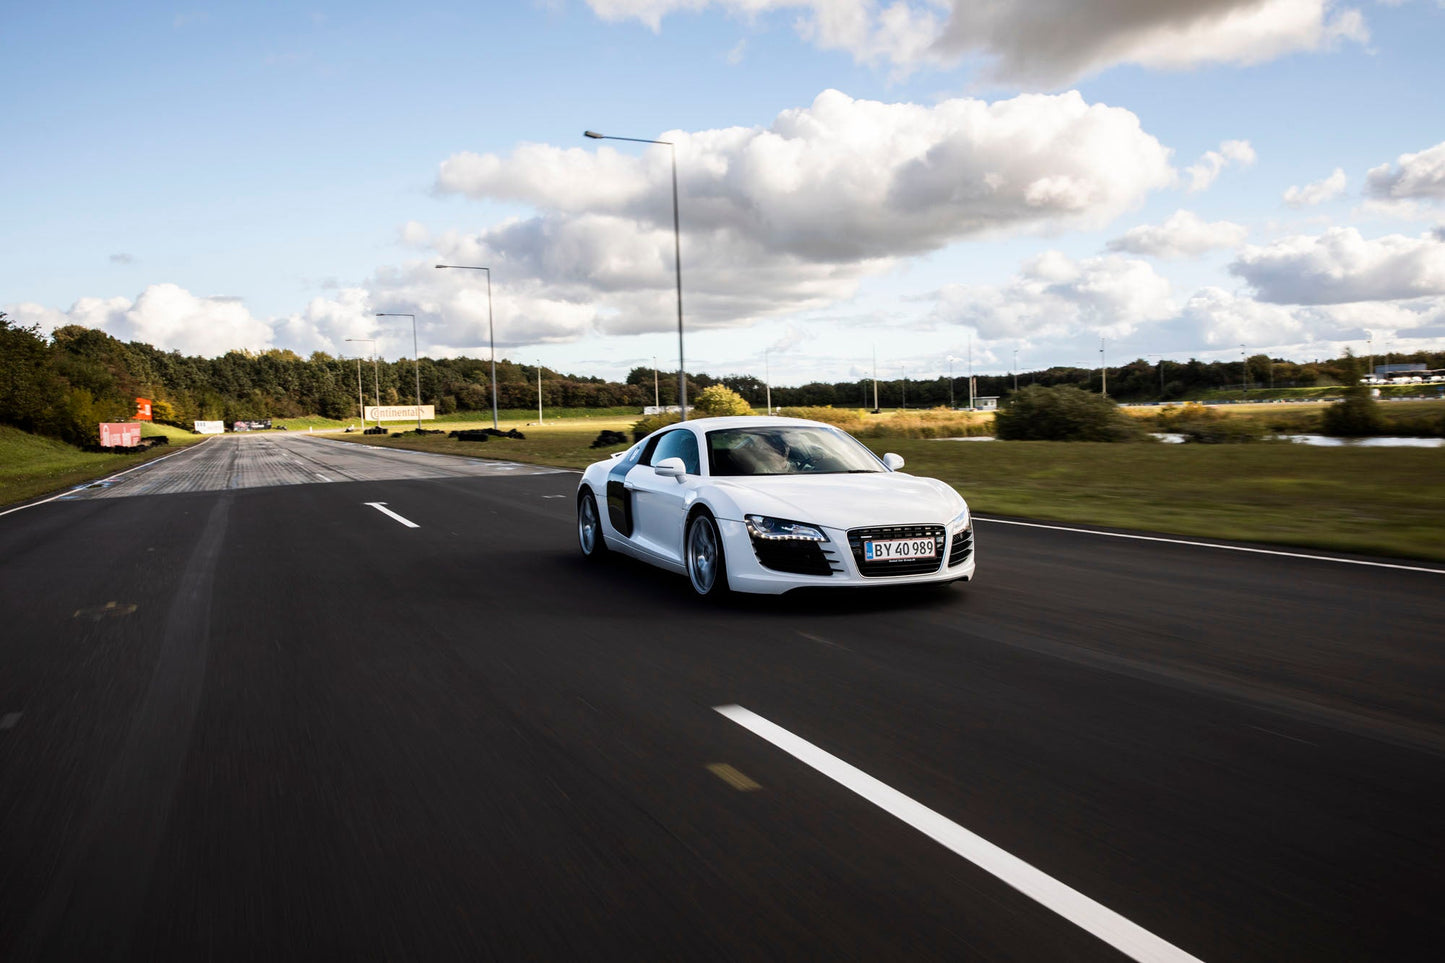 For 2 personer – Kør Audi og Porsche på bane